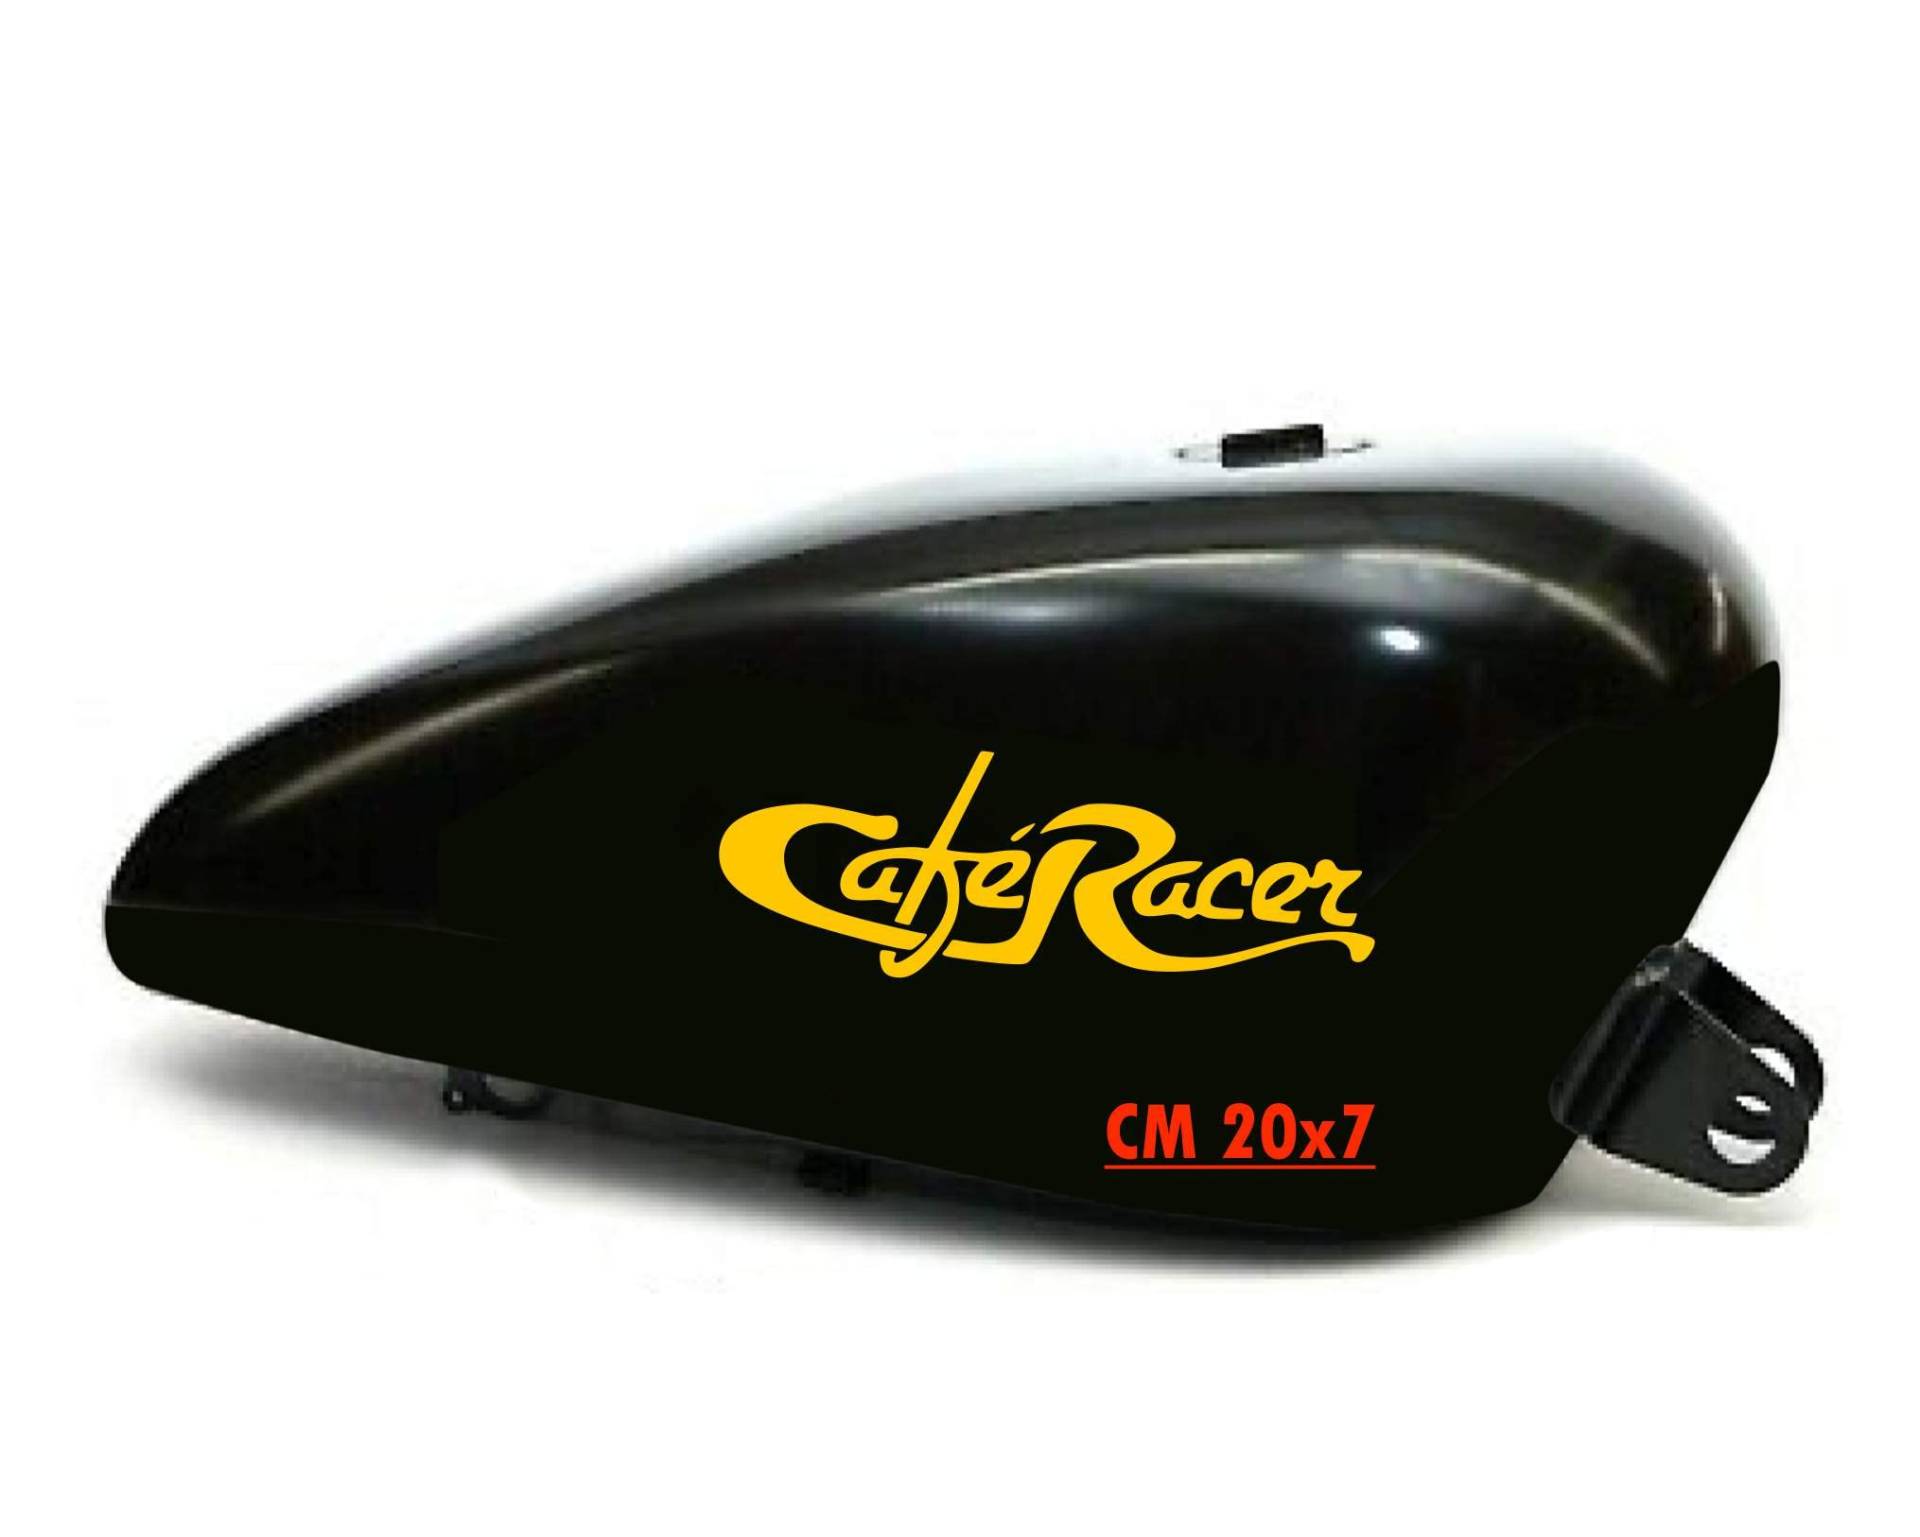 Set mit 2 Aufklebern für Motorrad, Tank, Cafe Racer Harley Custom Vintage, Artikelnummer 1664 (021 gelb, glänzend (glossy_polier)) von Pimastickerslab